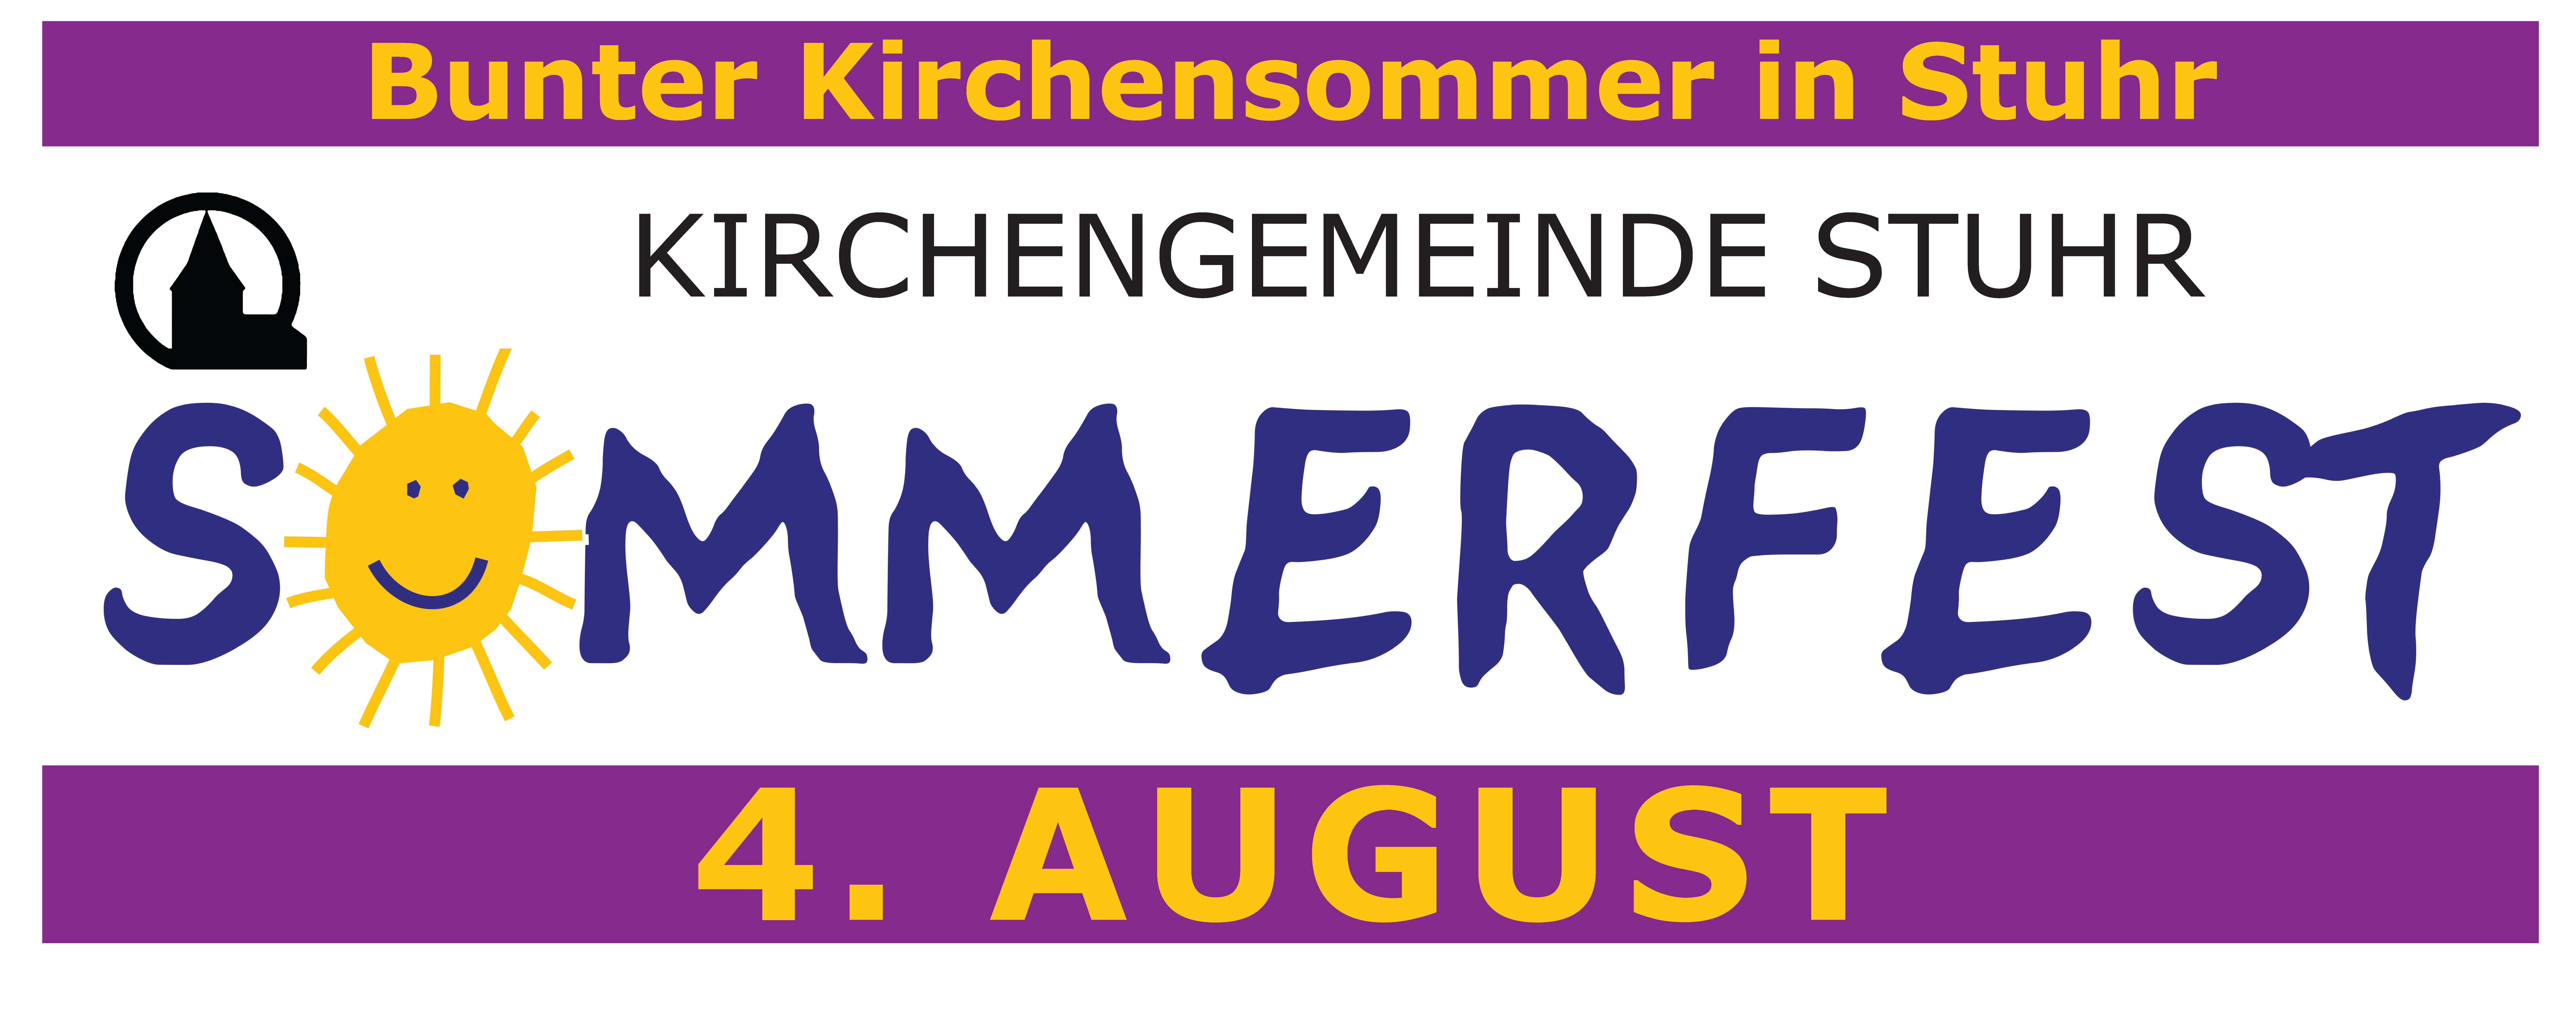 Sommerfest: Bunter Kirchensommer in Stuhr!